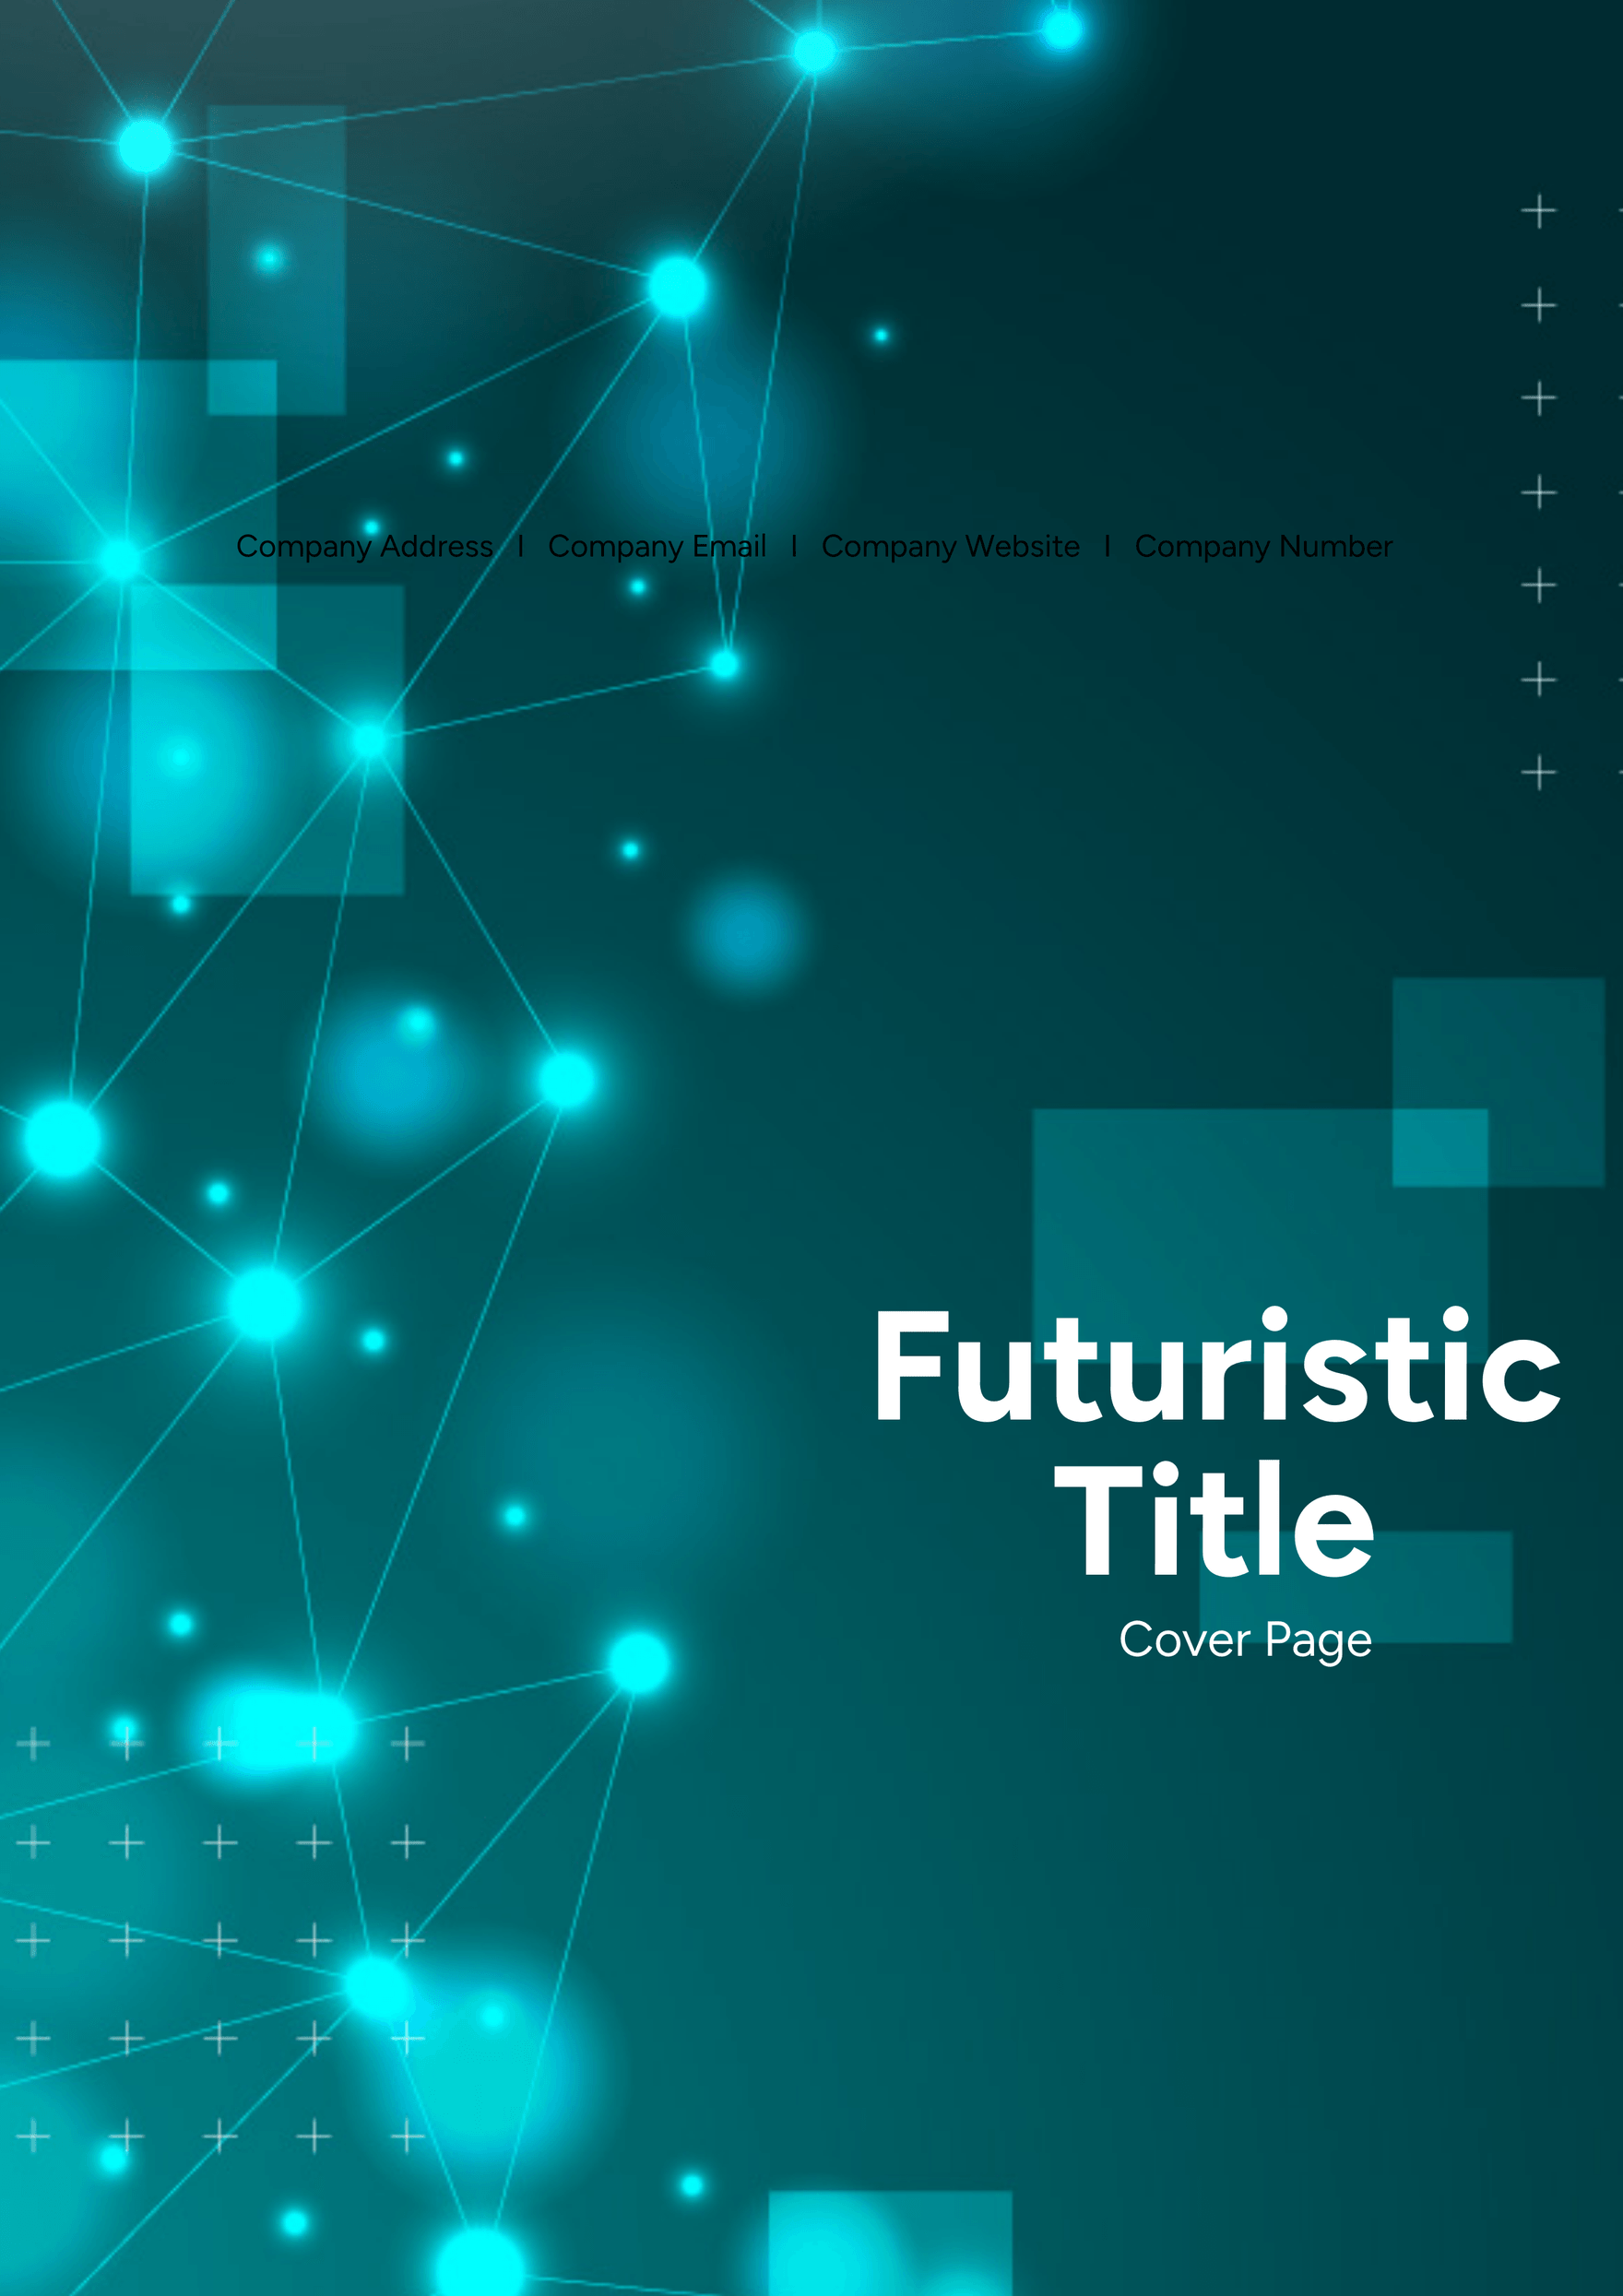 Futuristic Title Cover Page